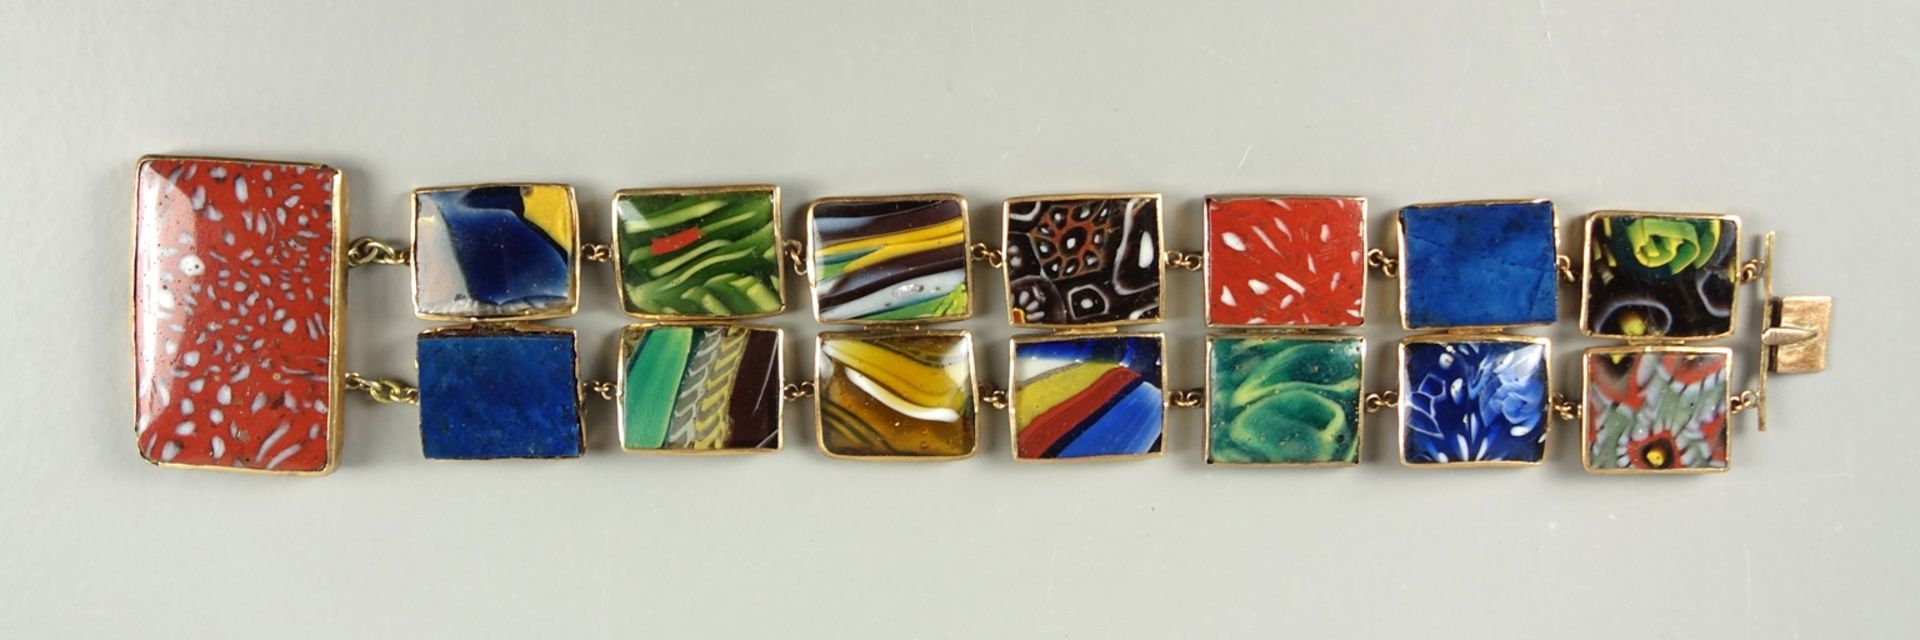 Armband mit Glasschmelzelementen, Murano, Goldfassung, 19.Jh., unterschiedliche - Image 5 of 7